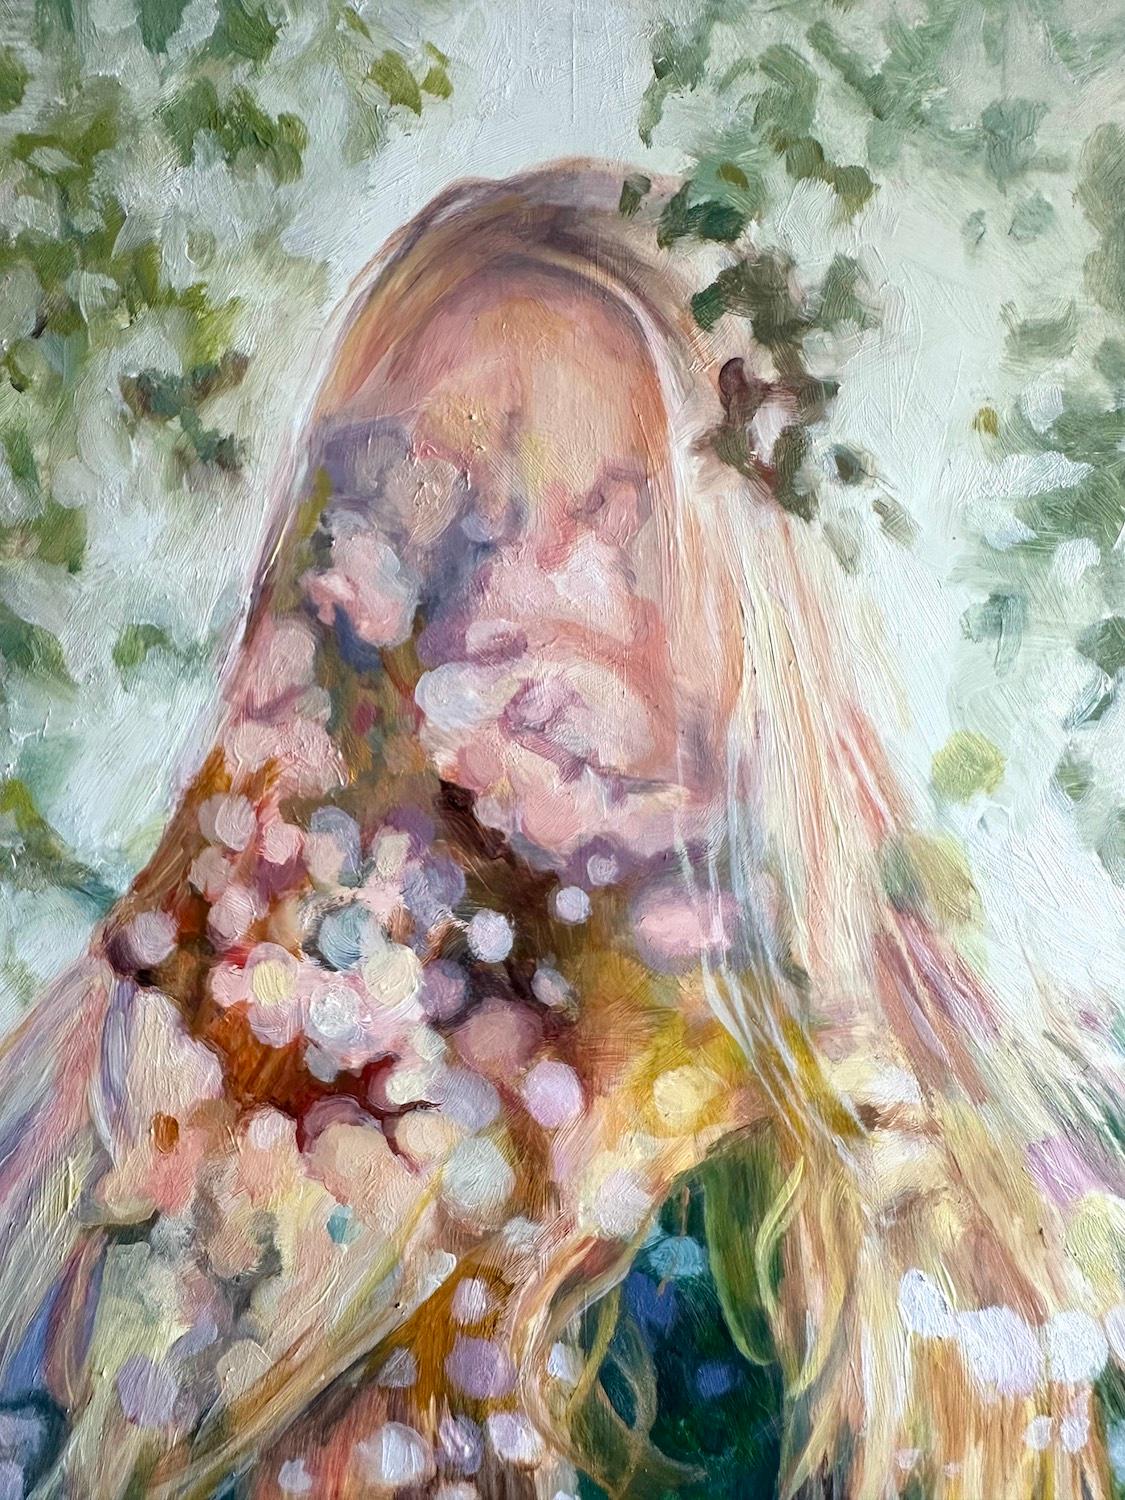 <p>Commentaires de l'artiste<br>L'artiste Kristen Brown représente la figure ambiguë d'une femme aux cheveux longs. Les flous mouchetés créent du dynamisme et du charisme dans ce portrait rêveur. Des motifs lumineux superposés et des images d'arbres